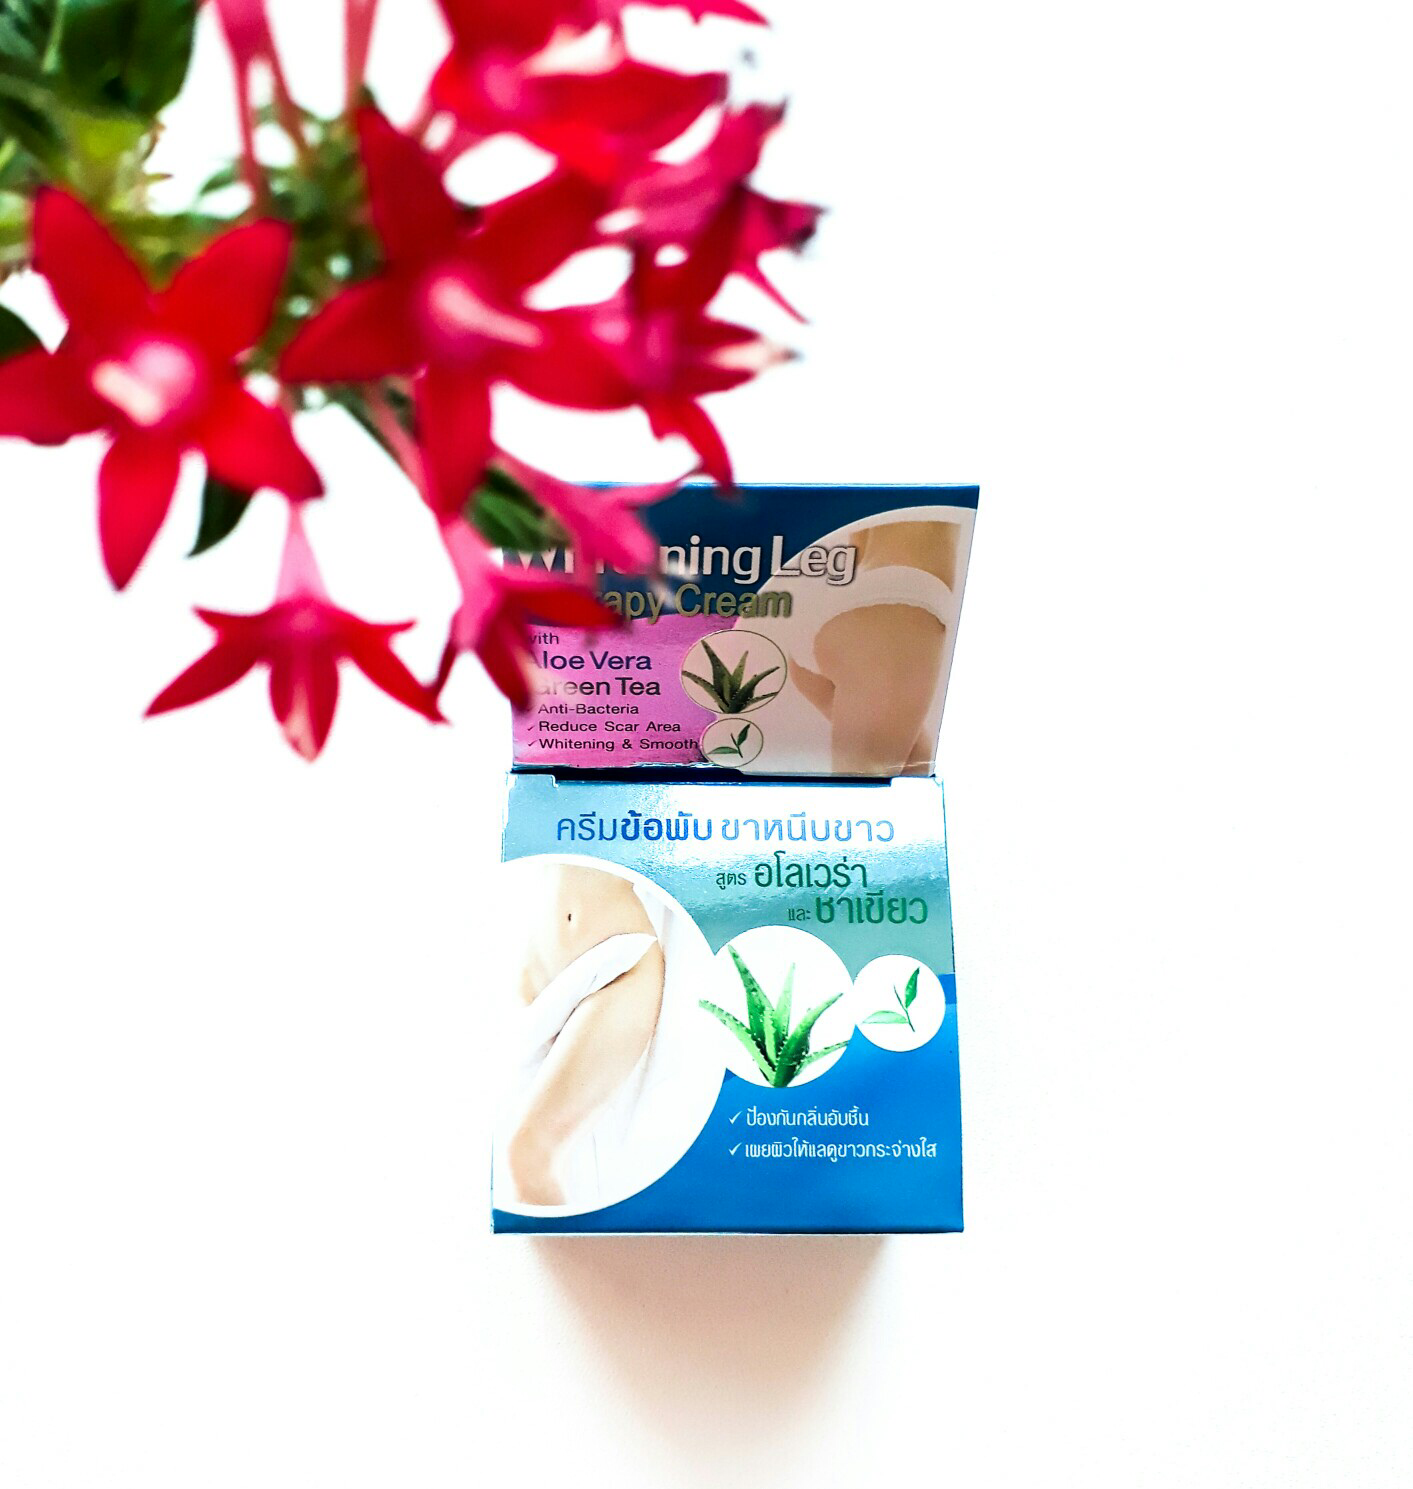 Уникальный состав Тайского отбеливающего крема для зоны бикини Isme Whitening Leg Cream и его воздействие.